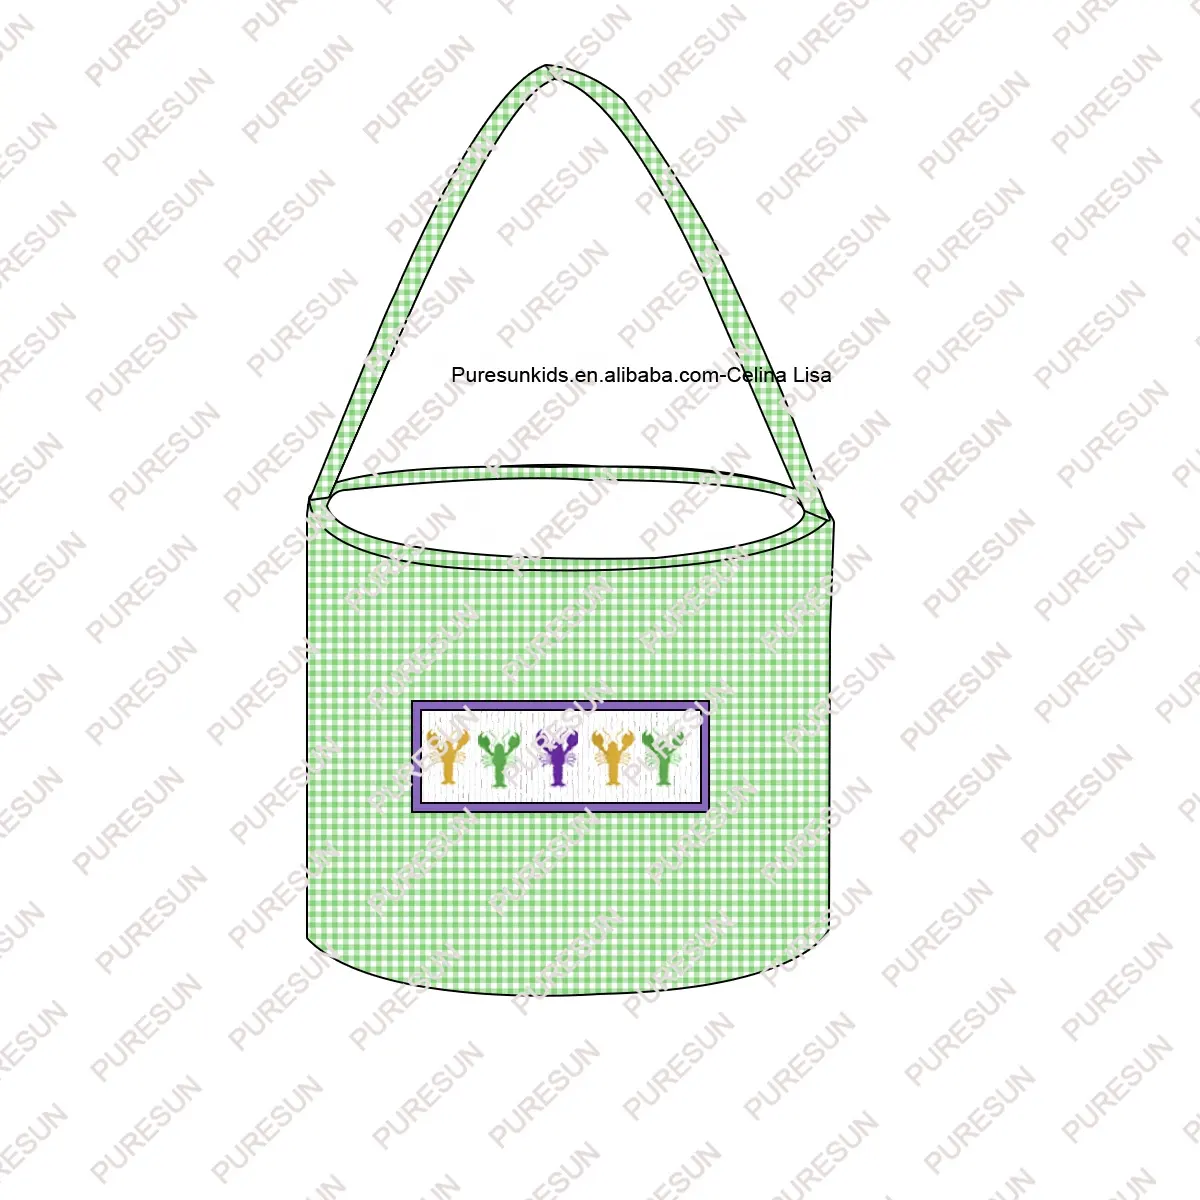 Baixo moq personalizado crianças balde sacos Mardi gras armazenamento grande capacidade smocked baby boy cestas com lagostim bordado